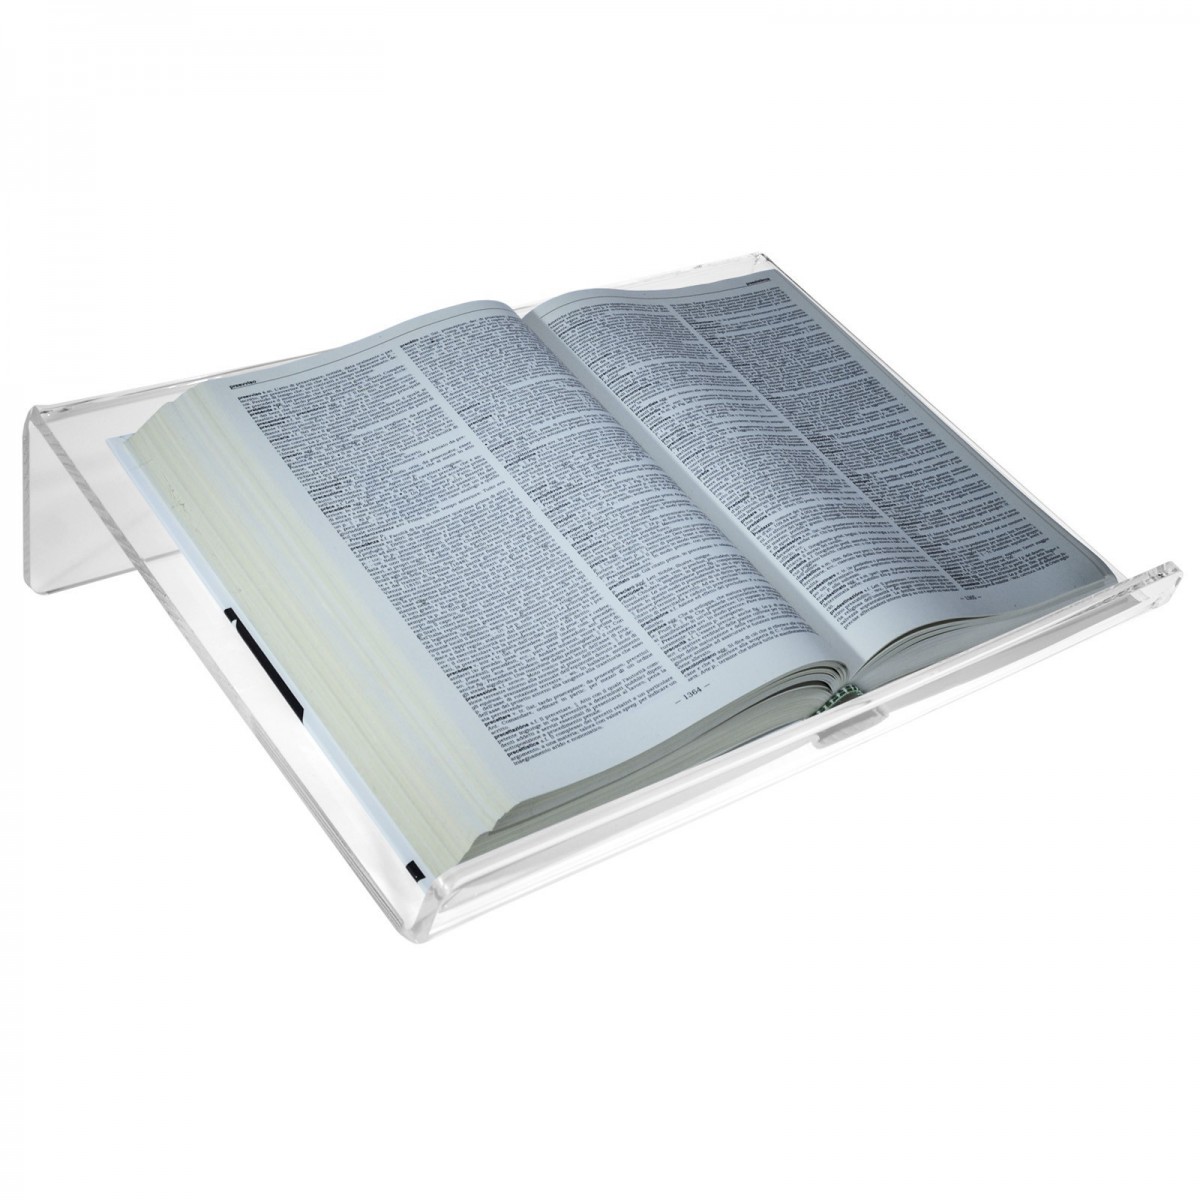 Leggio da tavolo in plexiglass trasparente con ripiano inclinato -  CM(LxPxH): 45x34x10